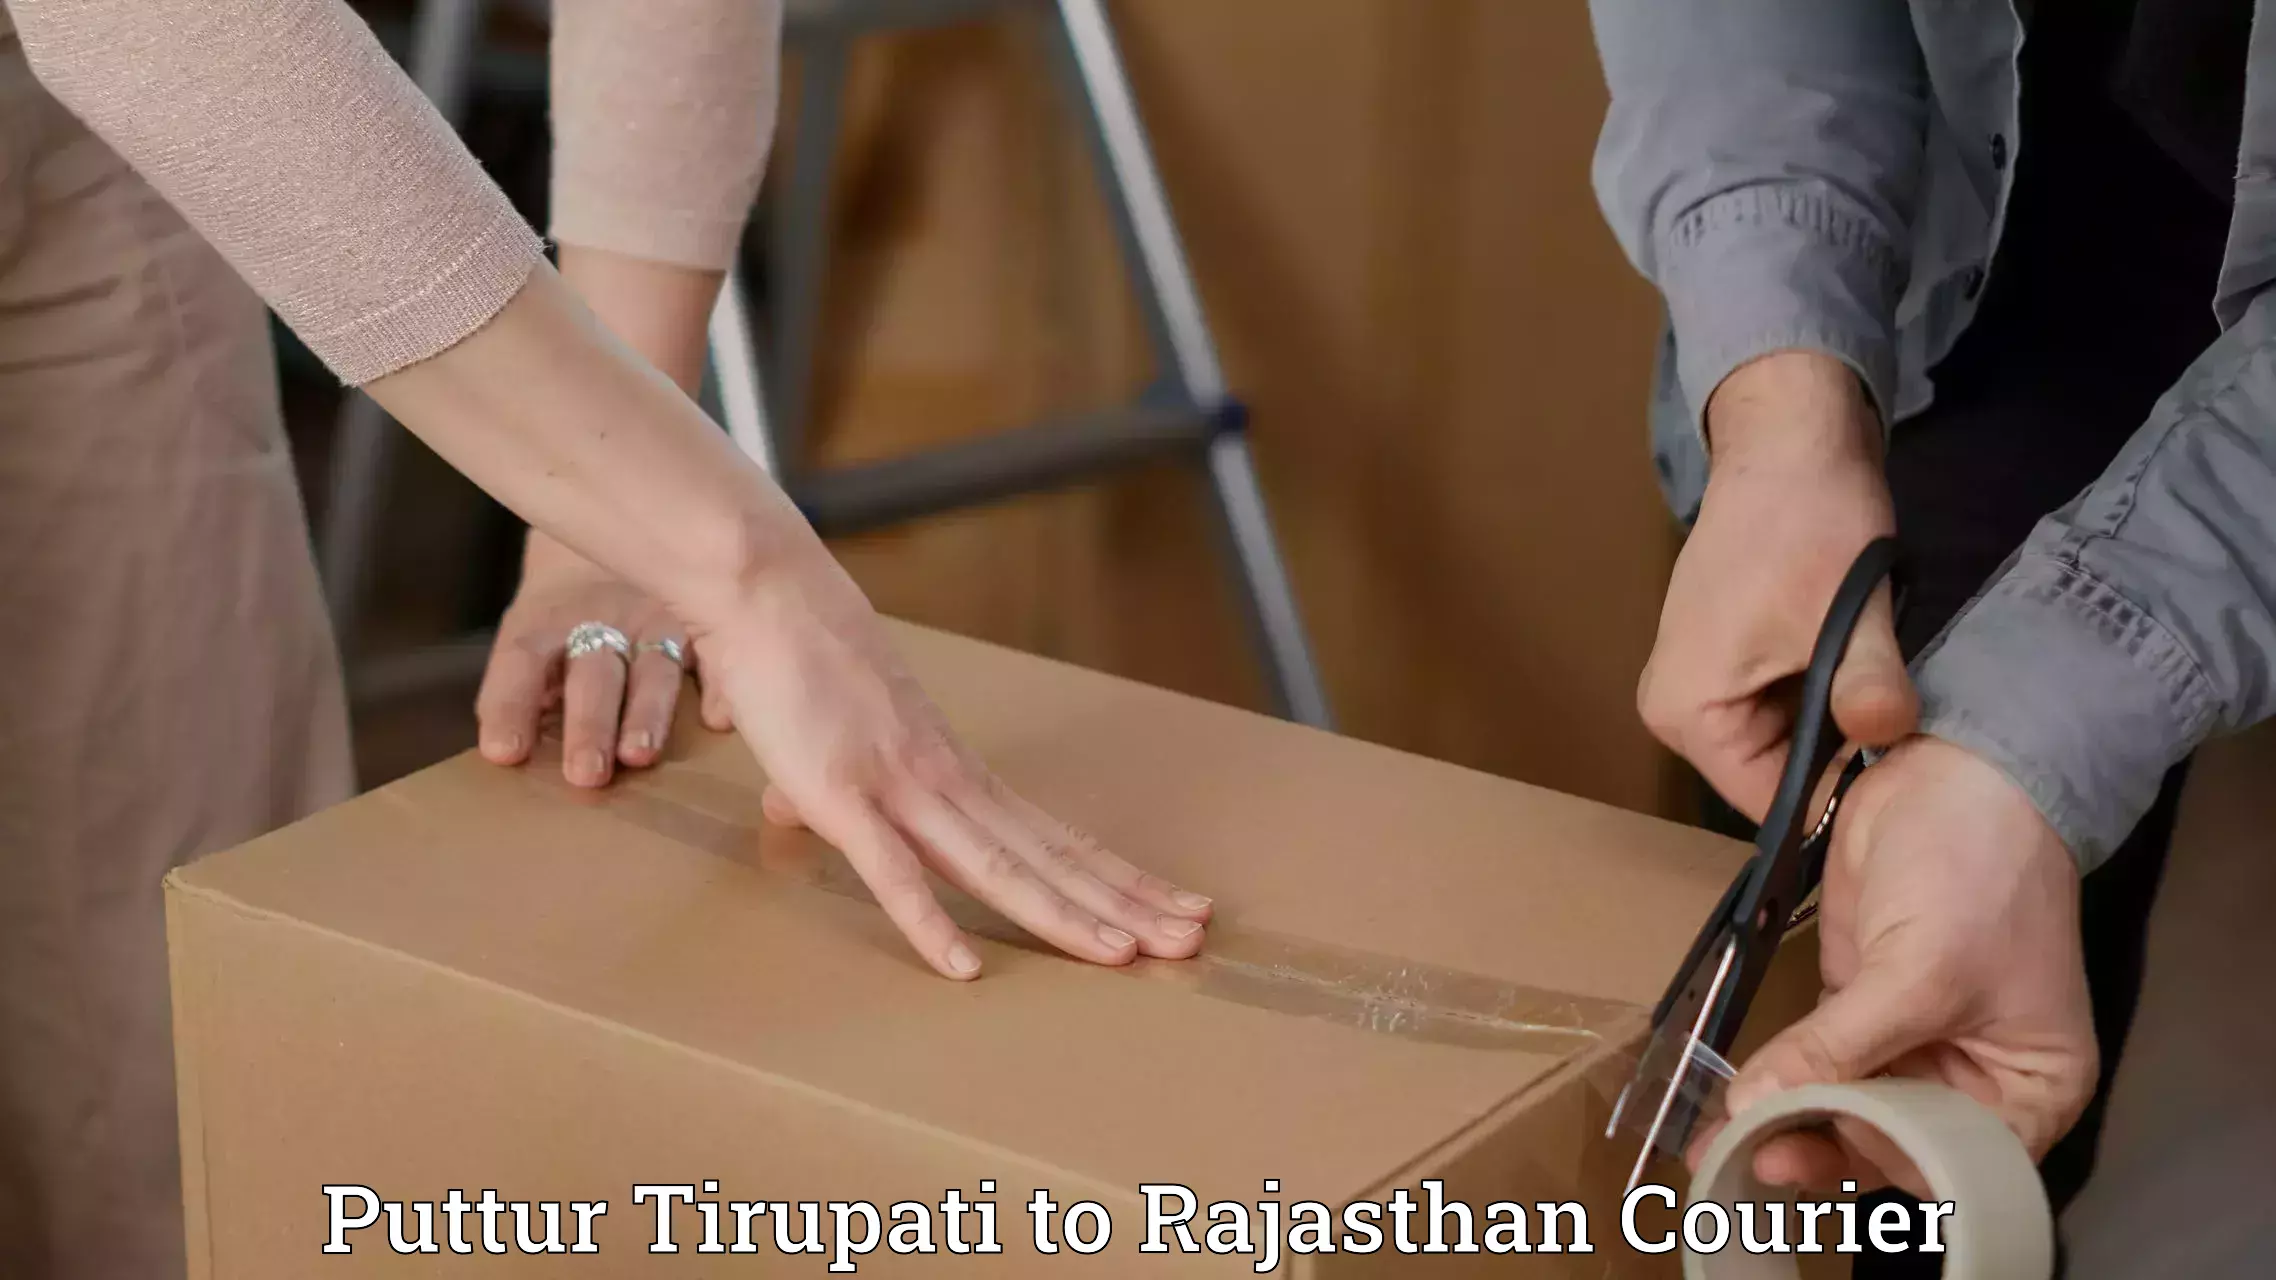 Baggage transport scheduler Puttur Tirupati to Rajasthan